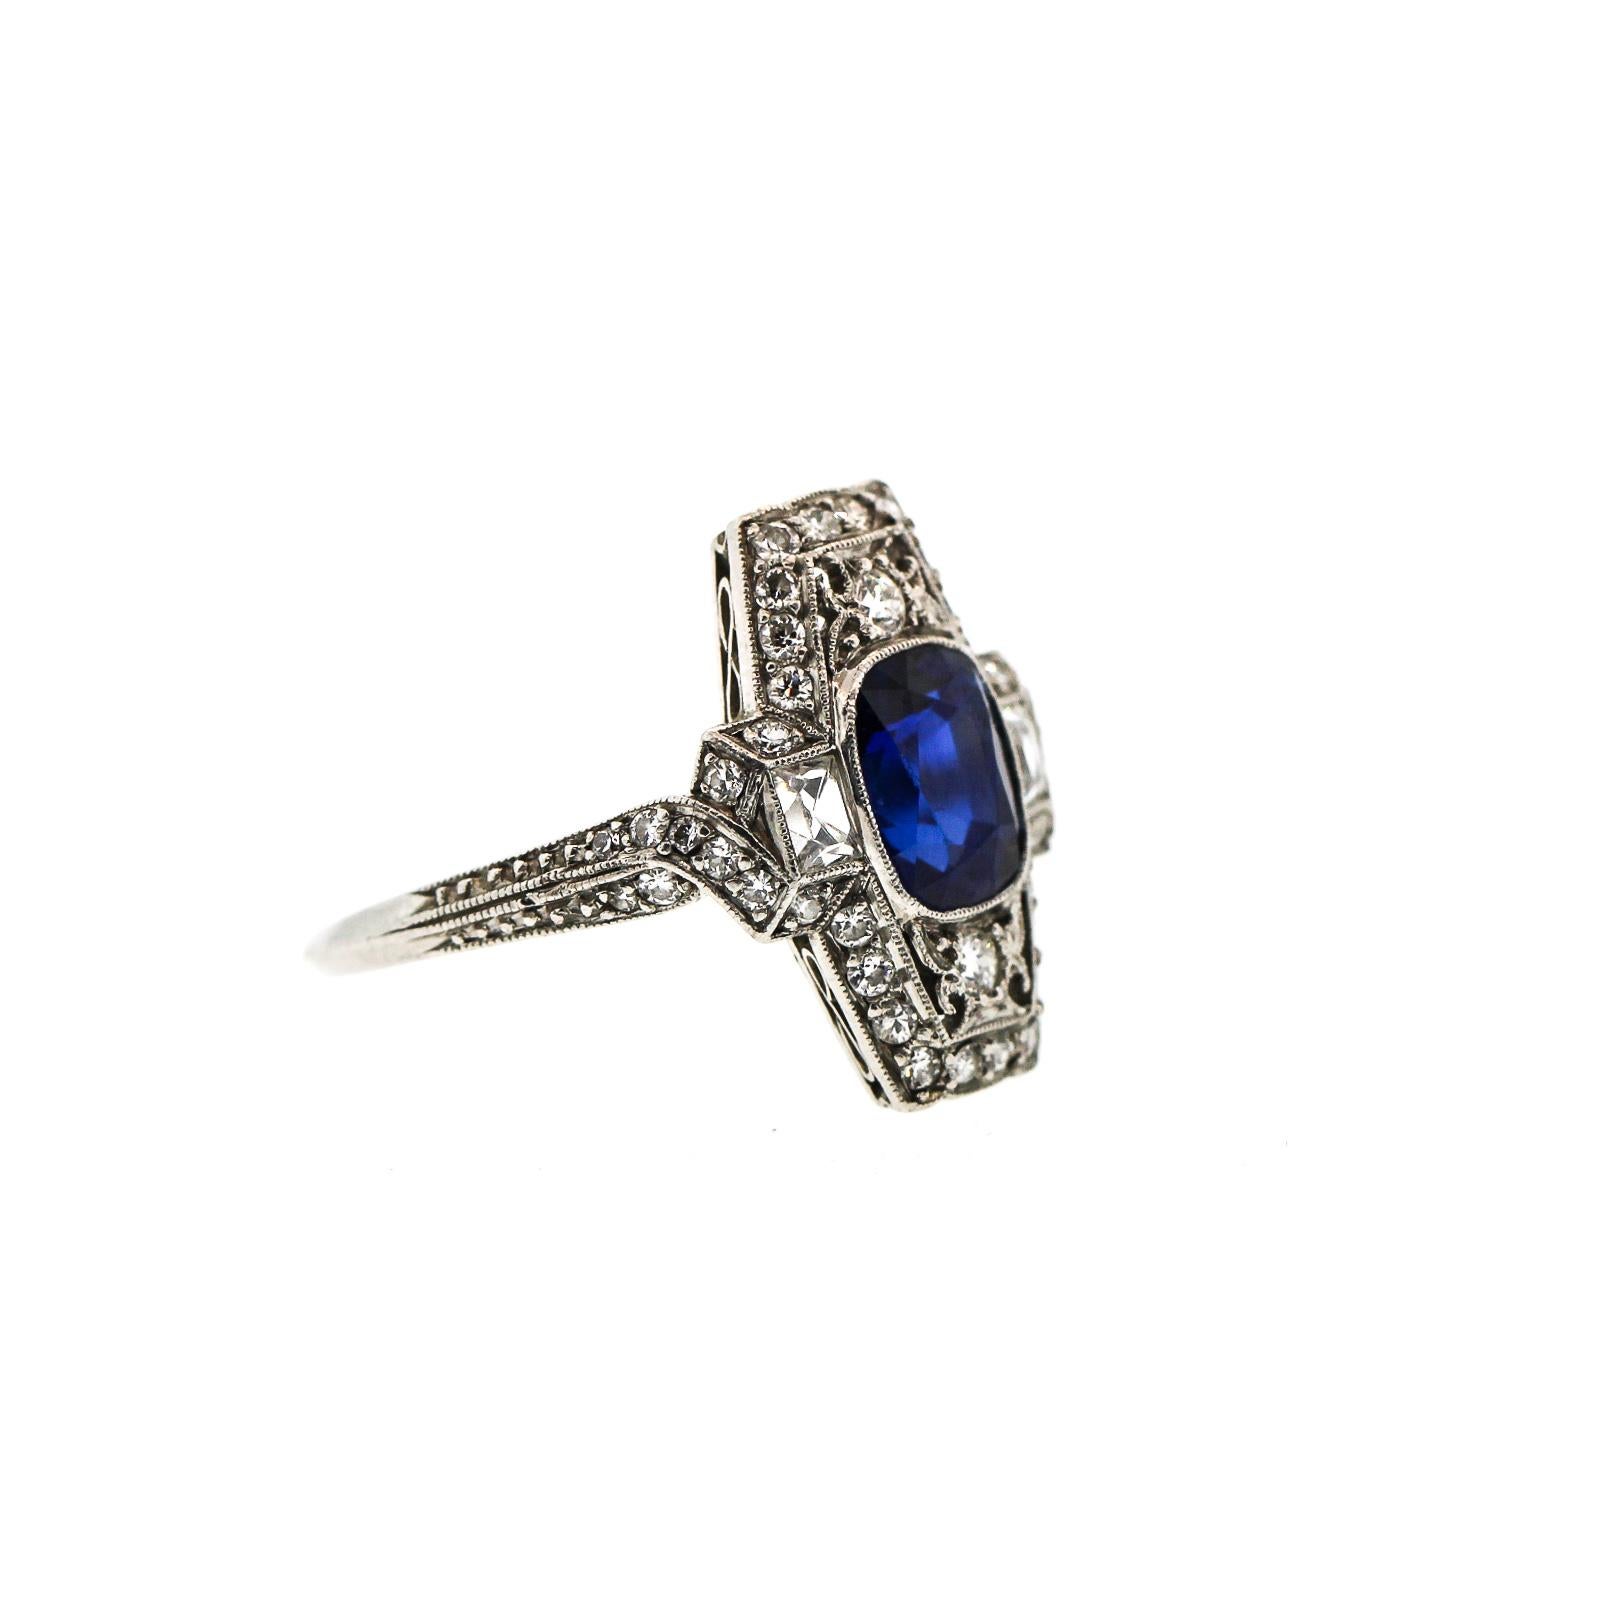 Ein seltener und makelloser Art-Déco-Kissensaphir-Platin-Diamantring von Tiffany & Co. um 1925. Dieser Ring enthält einen blauen kissenförmigen Saphir mit einem Gewicht von ca. 1,80 ct. Der Tafelring ist mit zwei Diamanten im französischen Schliff